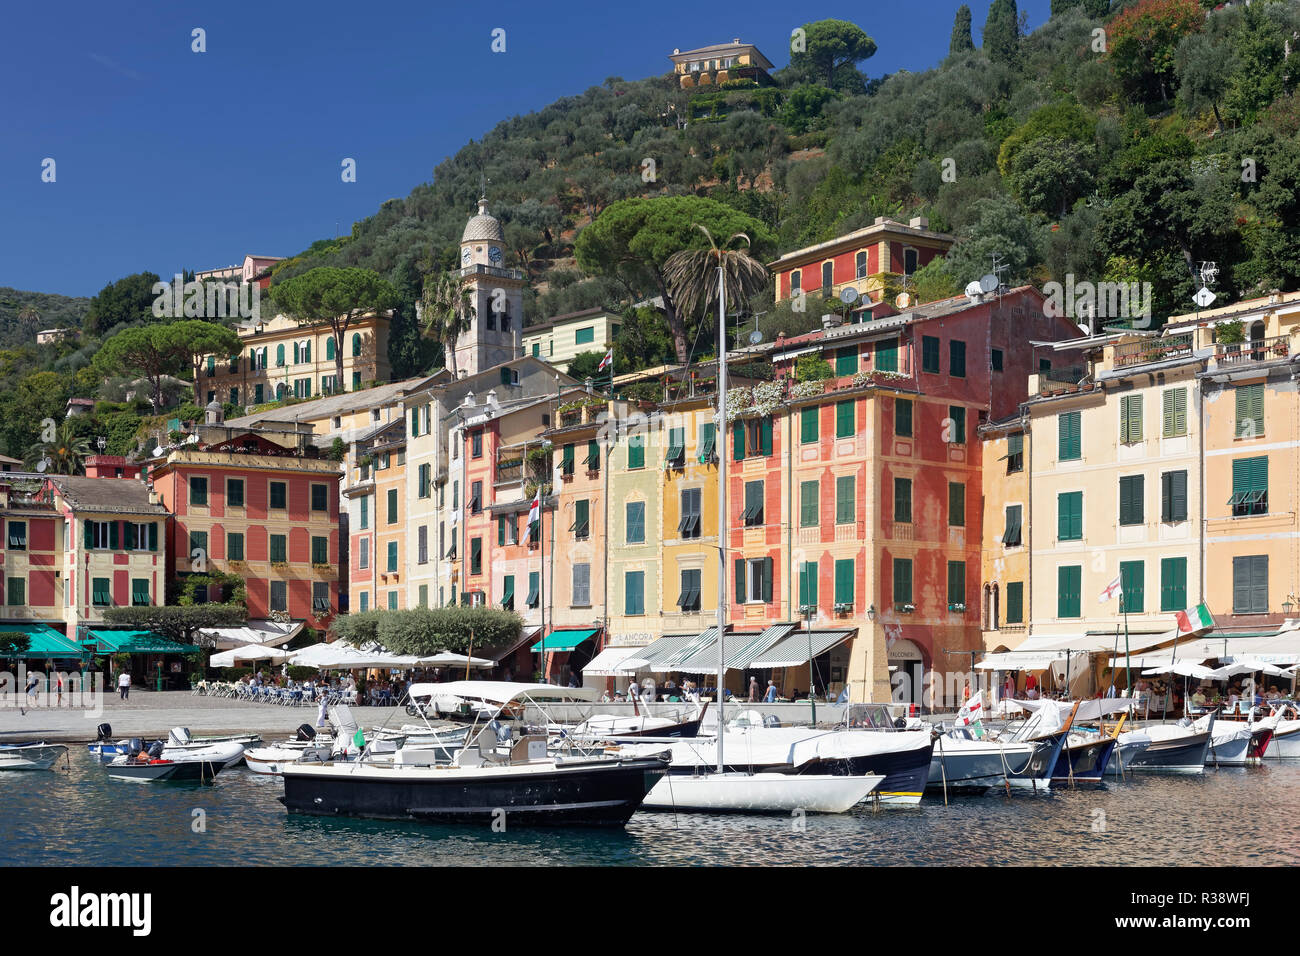 Village et Port, Portofino, Golfo Paradiso, Province de Gênes, Riviera di Levante, ligurie, italie Banque D'Images